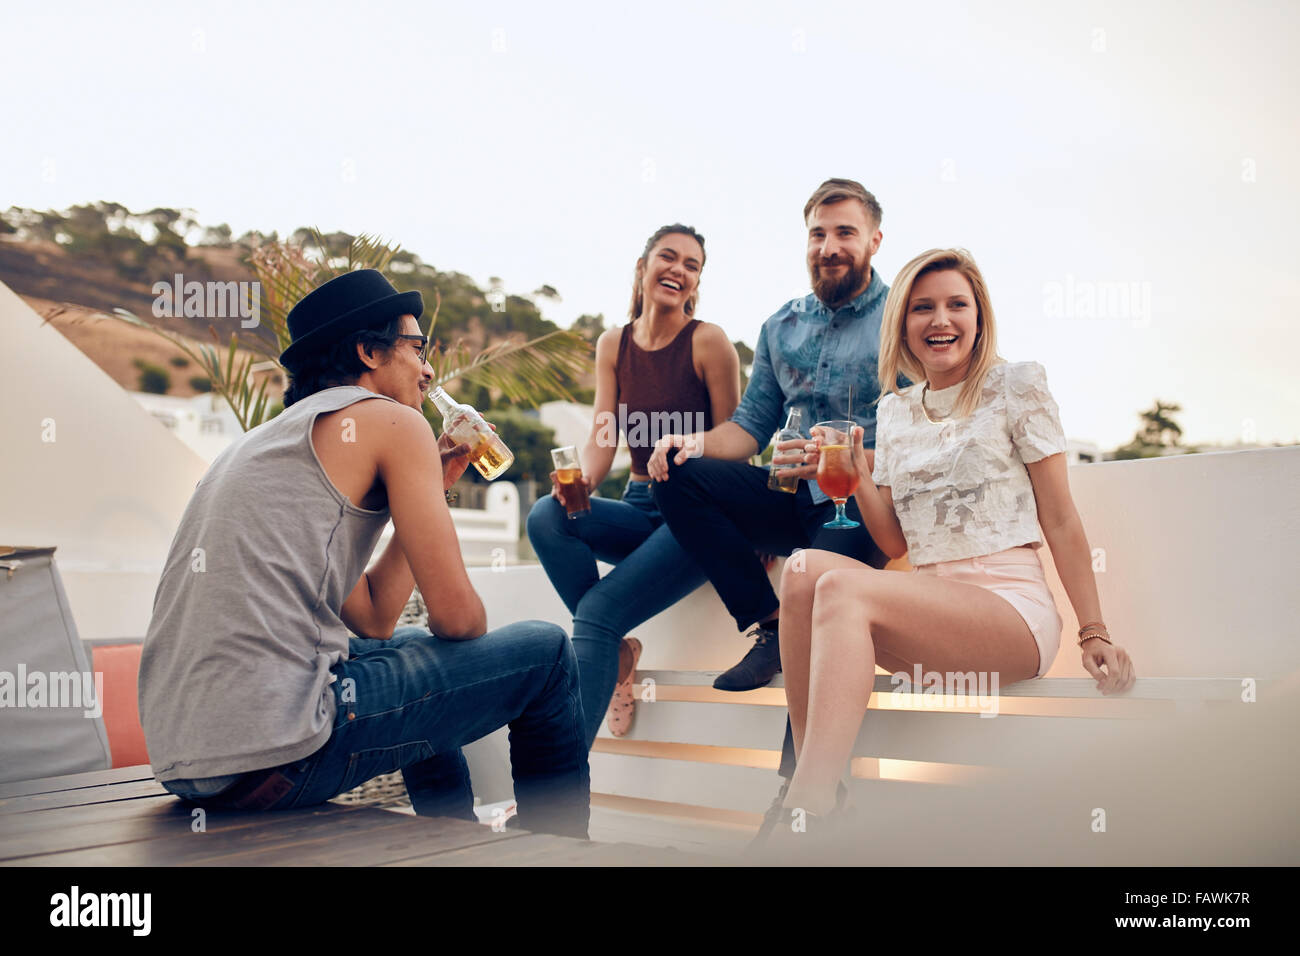 Schuss glückliche junge Menschen sitzen zusammen mit Getränken. Freunde, die Spaß an Party. Top Party Cocktail Dach. Stockfoto